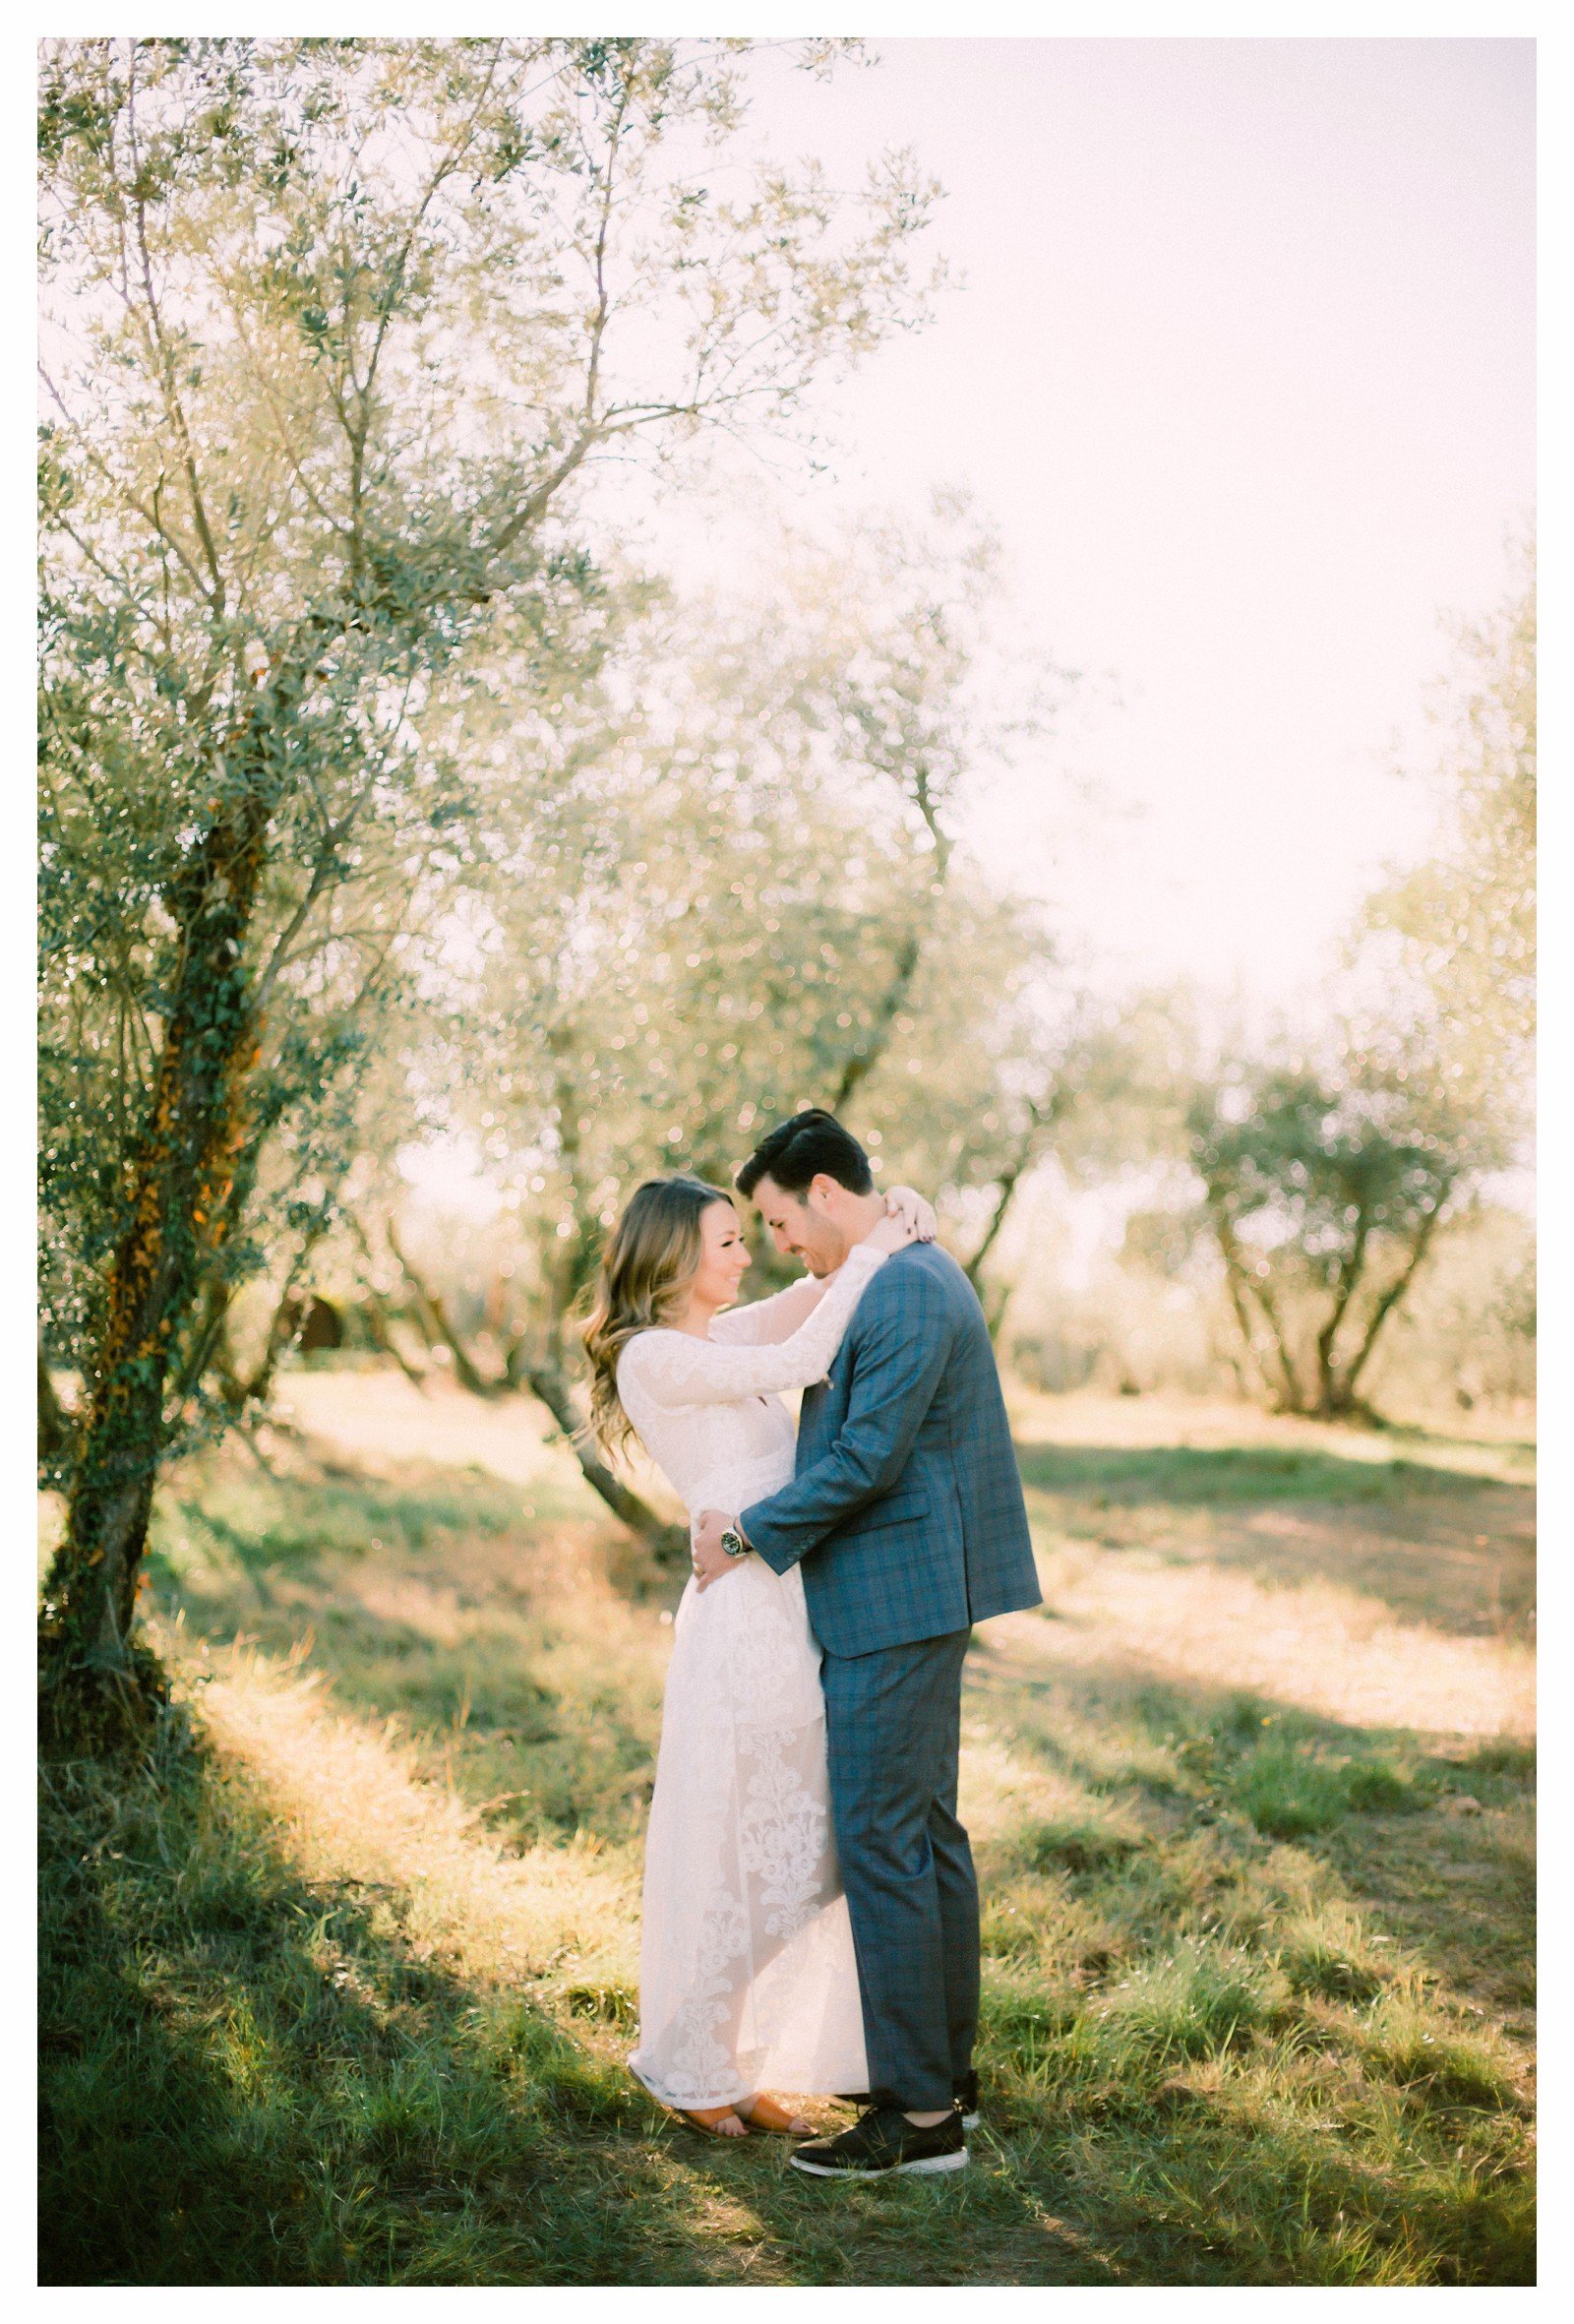 tuscany-countryside-val-dorcia-wedding-couple-photoshoot-photographer_0012.jpg